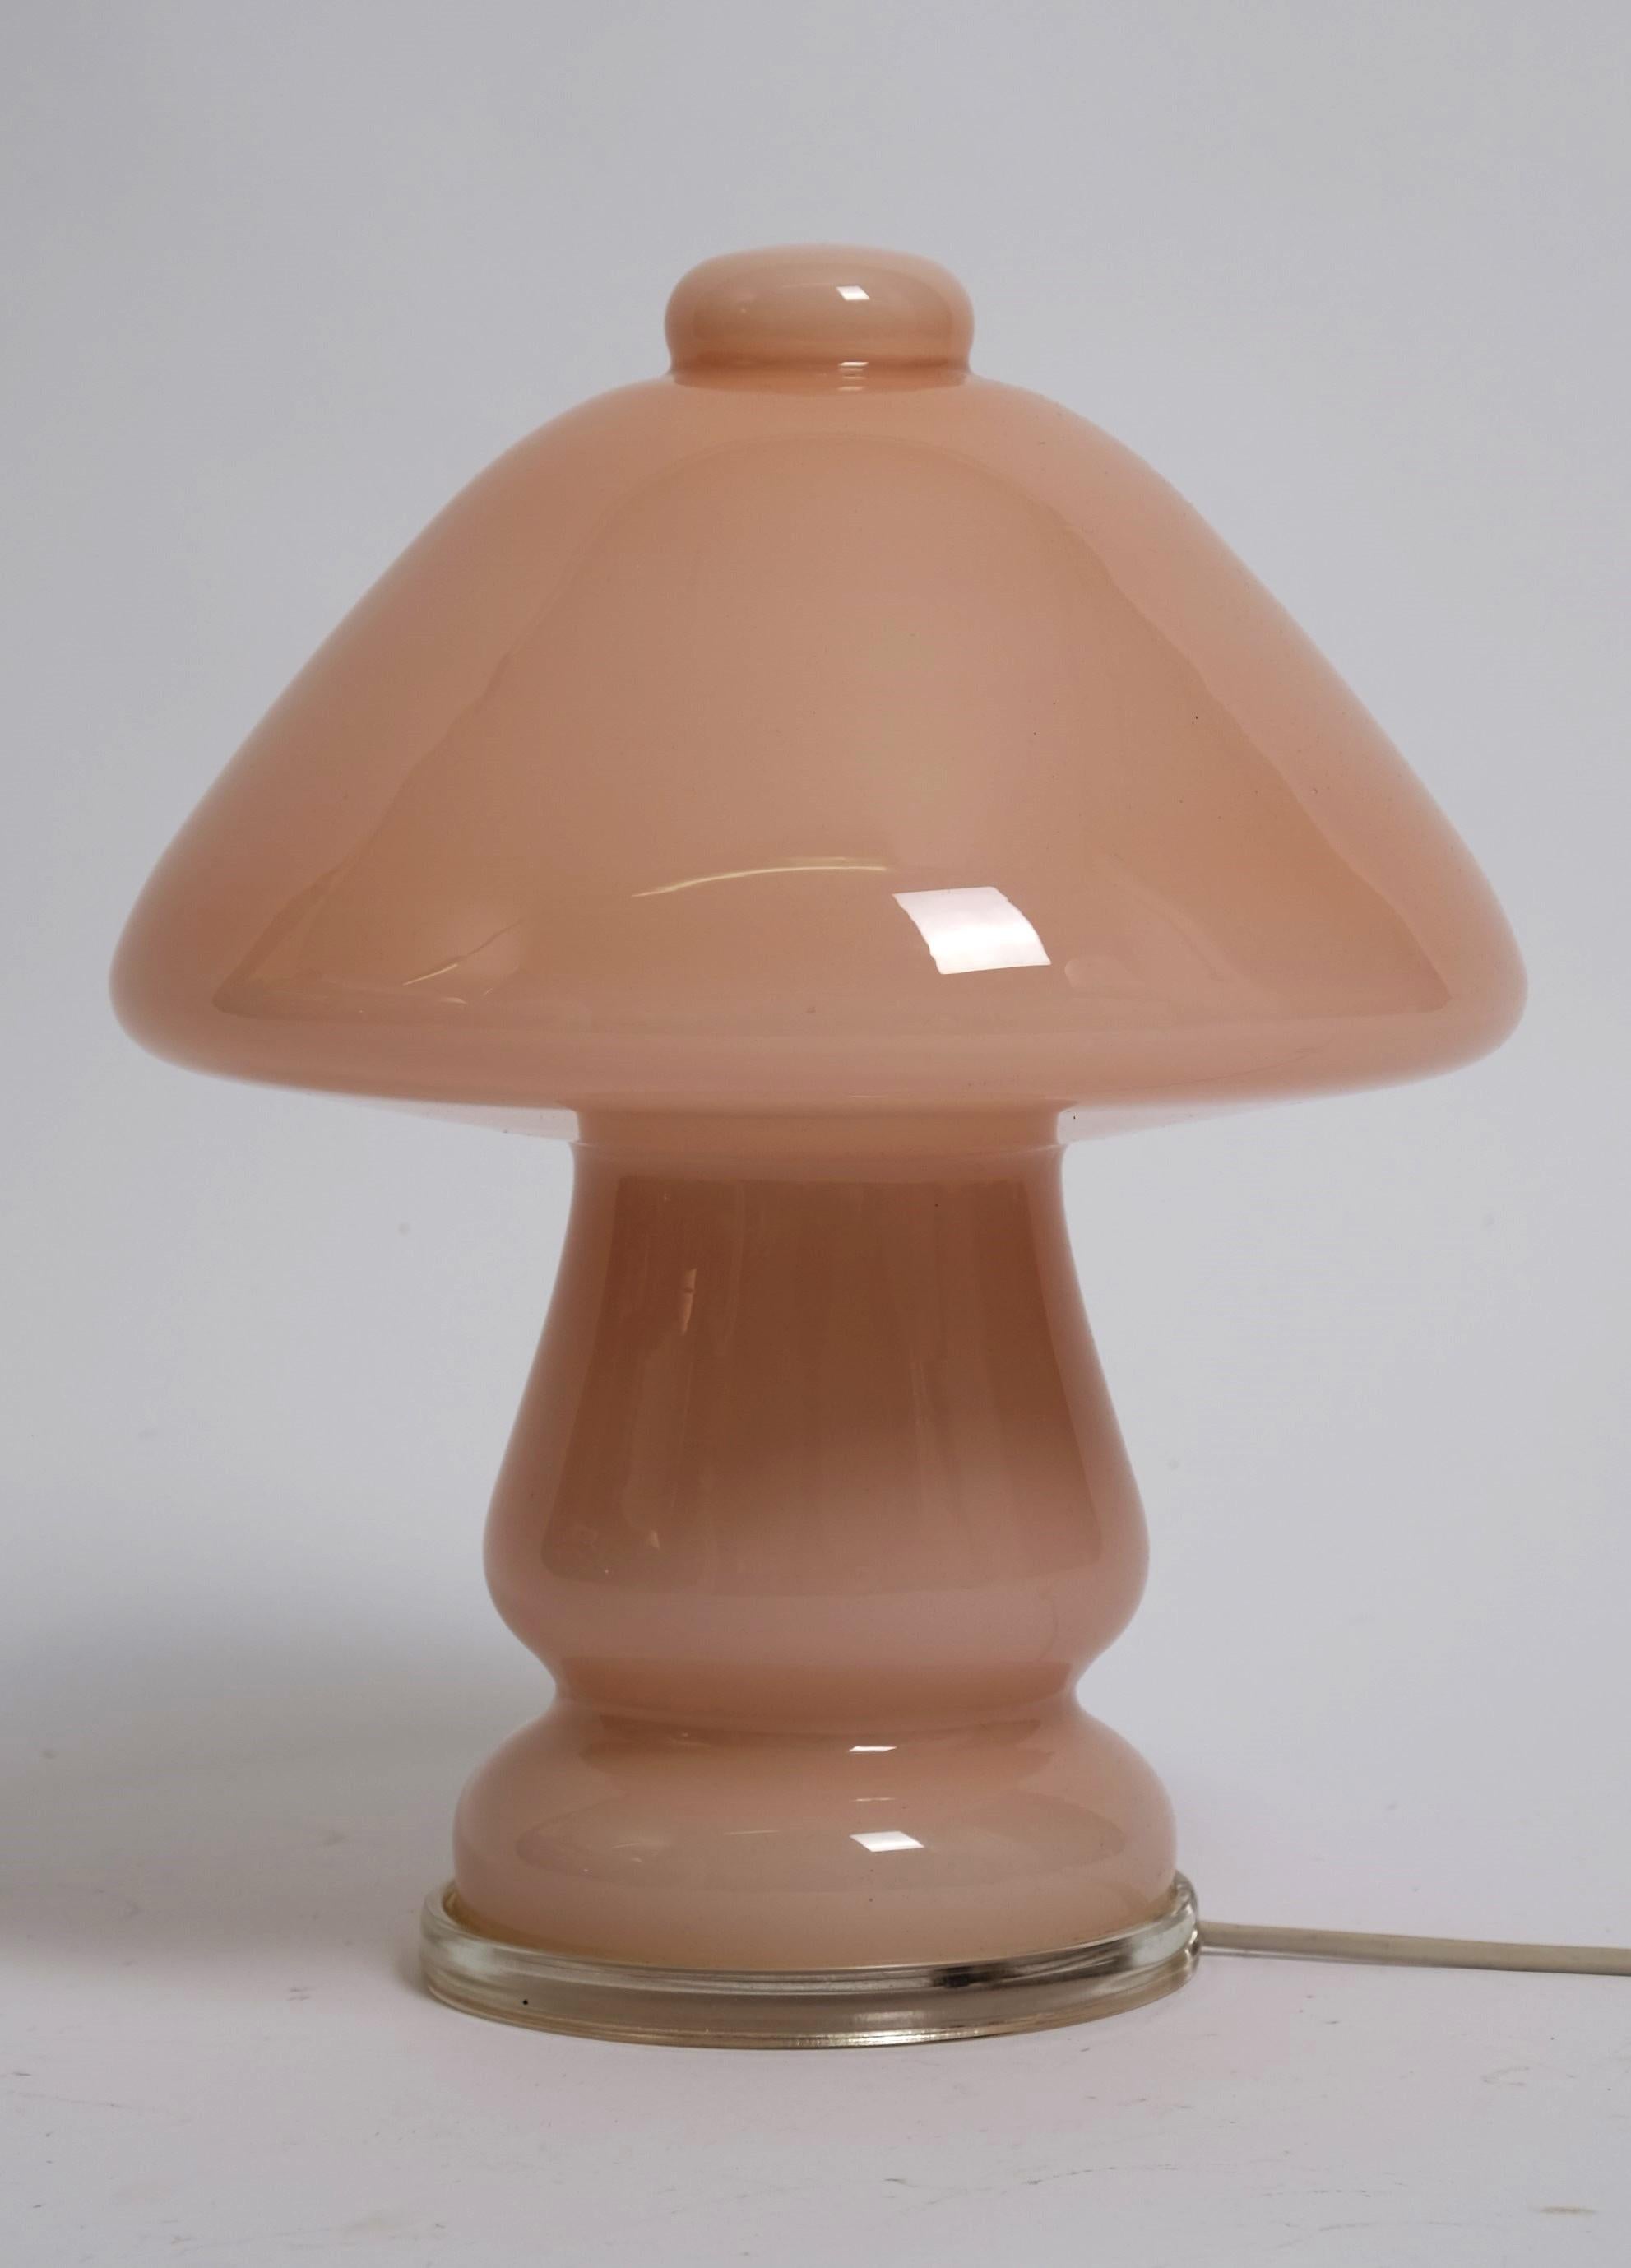 Seltene pilzförmige Tischlampe aus dickwandigem rosa Glas. Diese außergewöhnliche Tischleuchte wurde in den 1960er Jahren in Deutschland entworfen. 

Das Stück ist in einem wunderbaren Vintage-Zustand. Keine Beschädigungen, keine Absplitterungen,